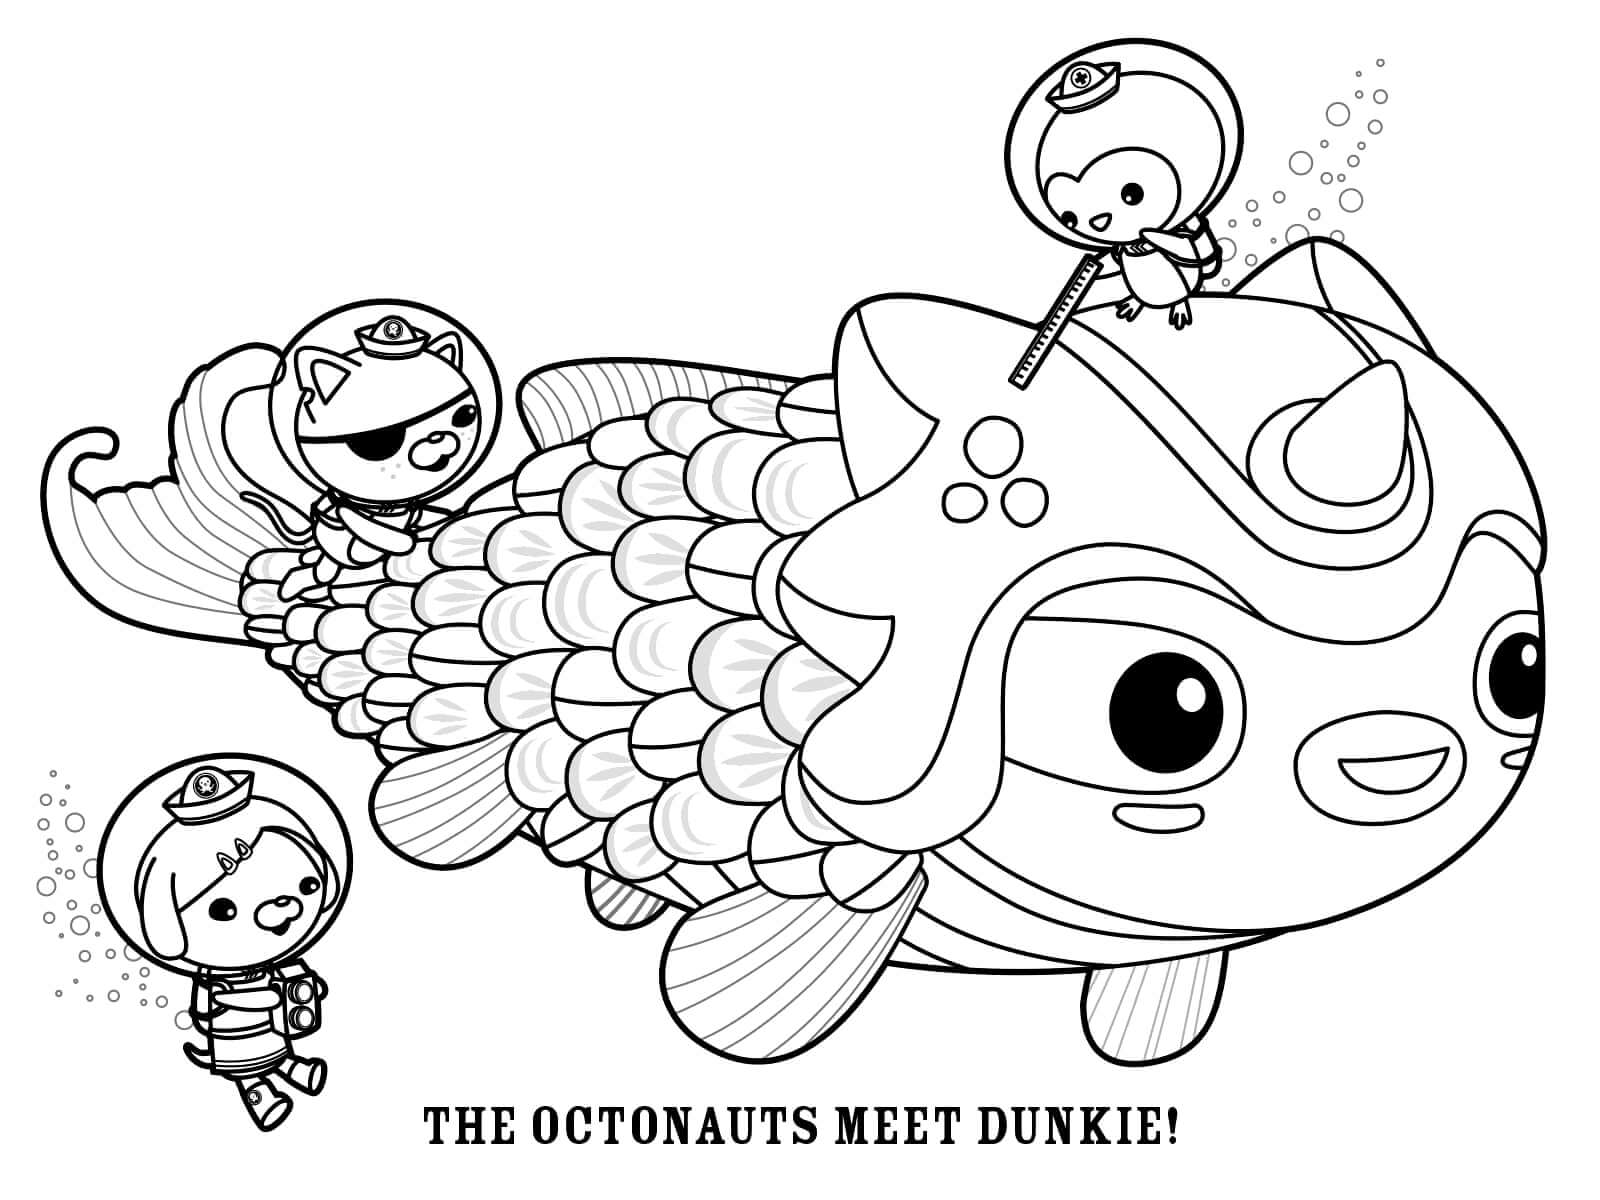 The Octonauts Meet Dunkie